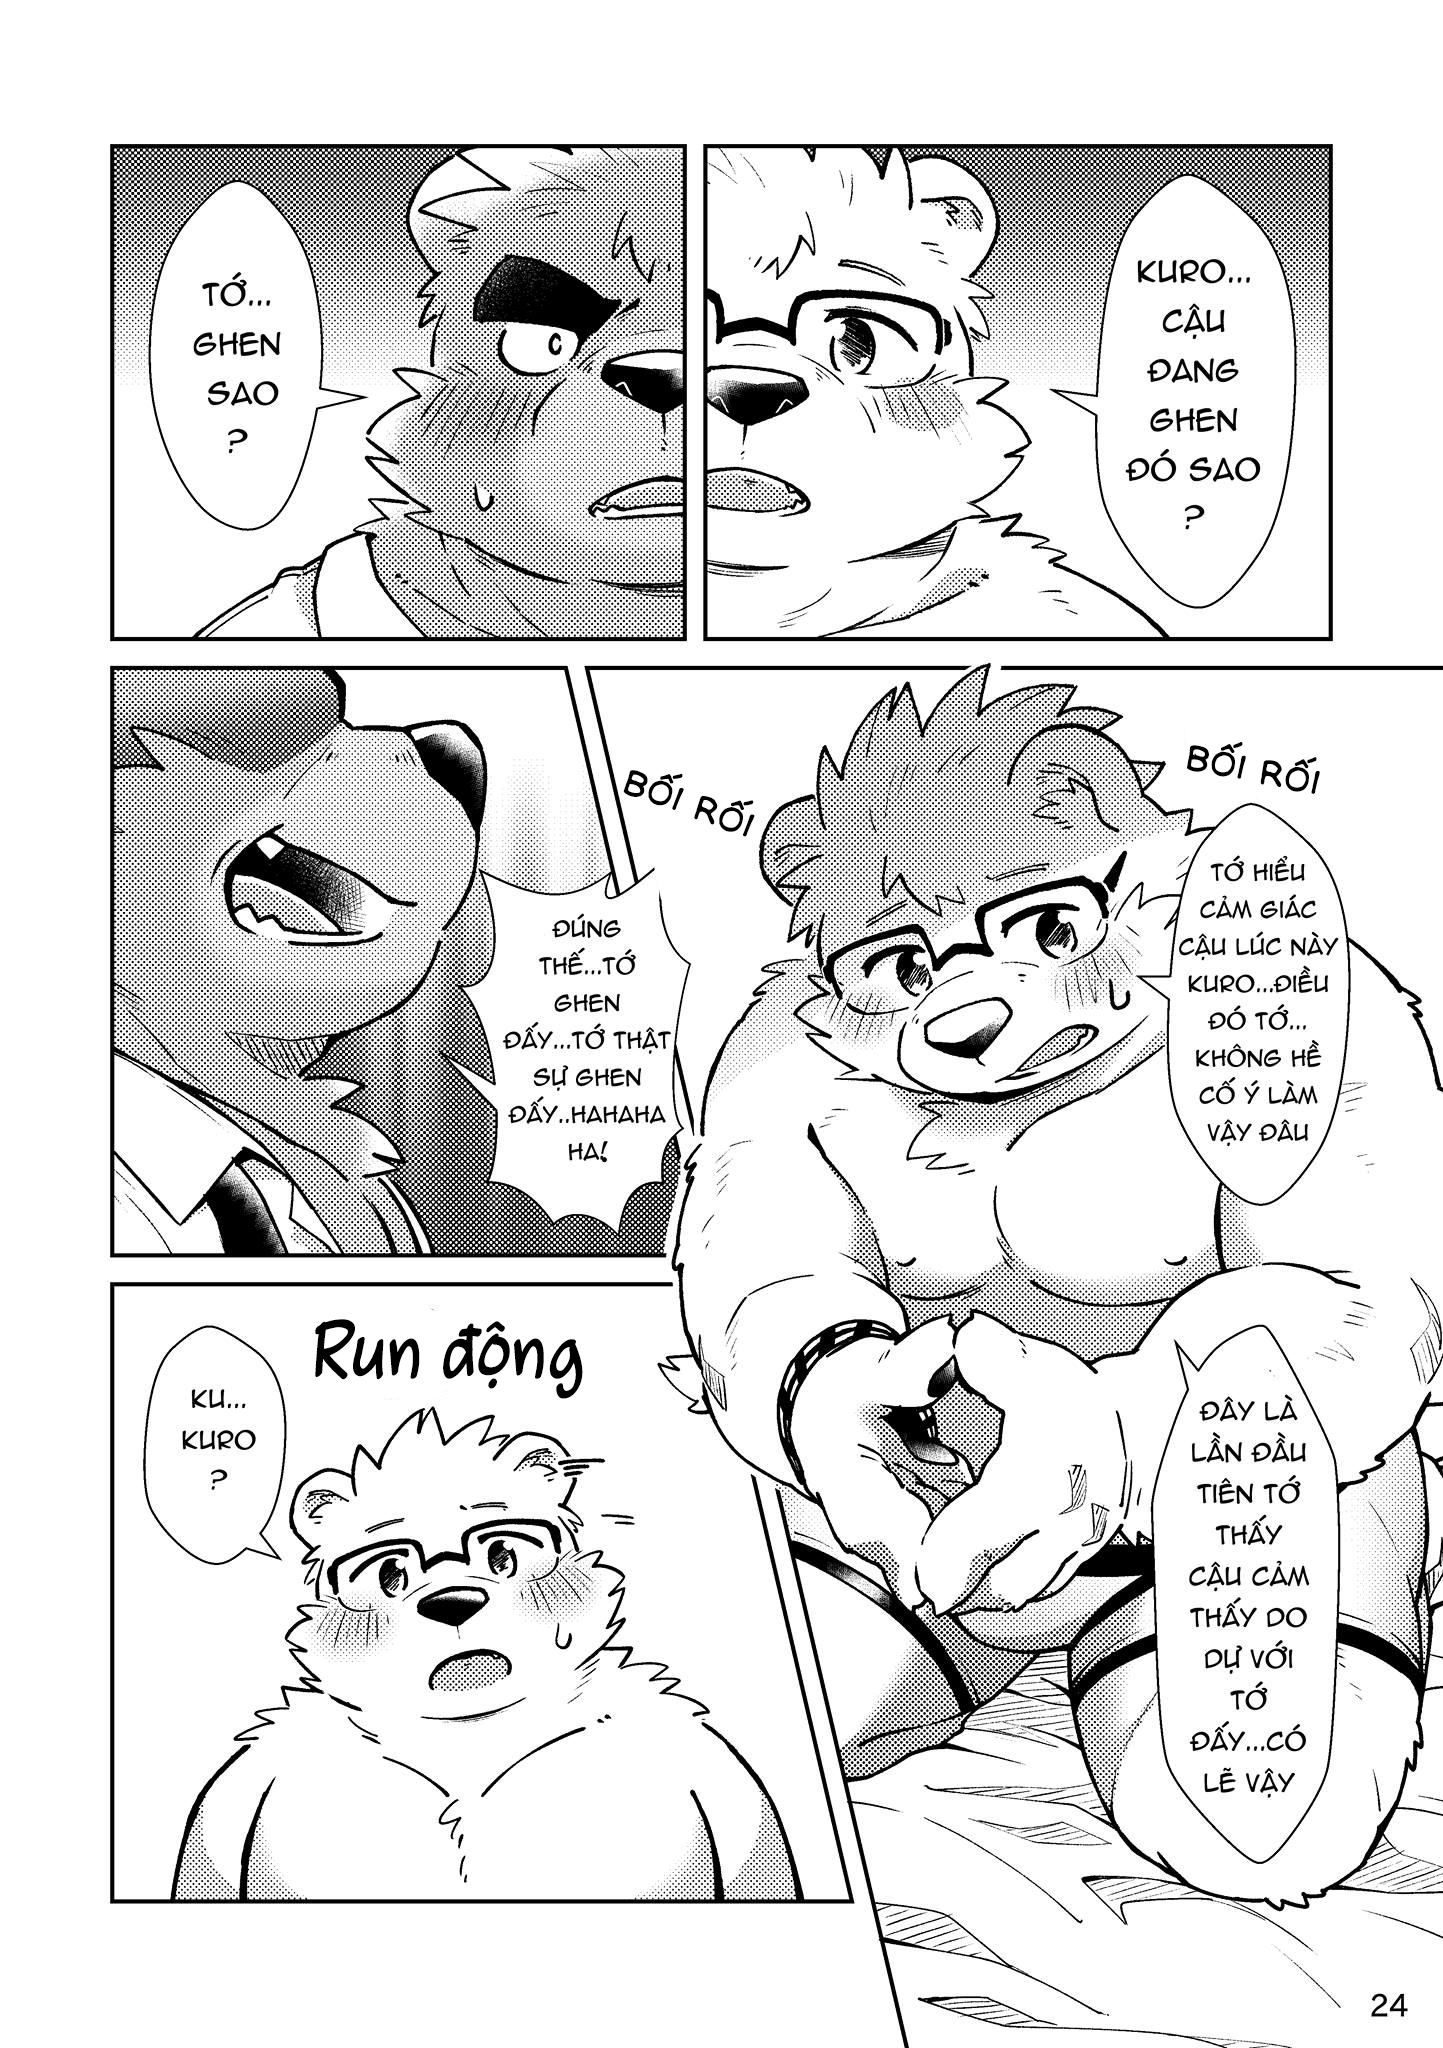 [Hinami] Shiro và Kuro  2 [VN] - Trang 25